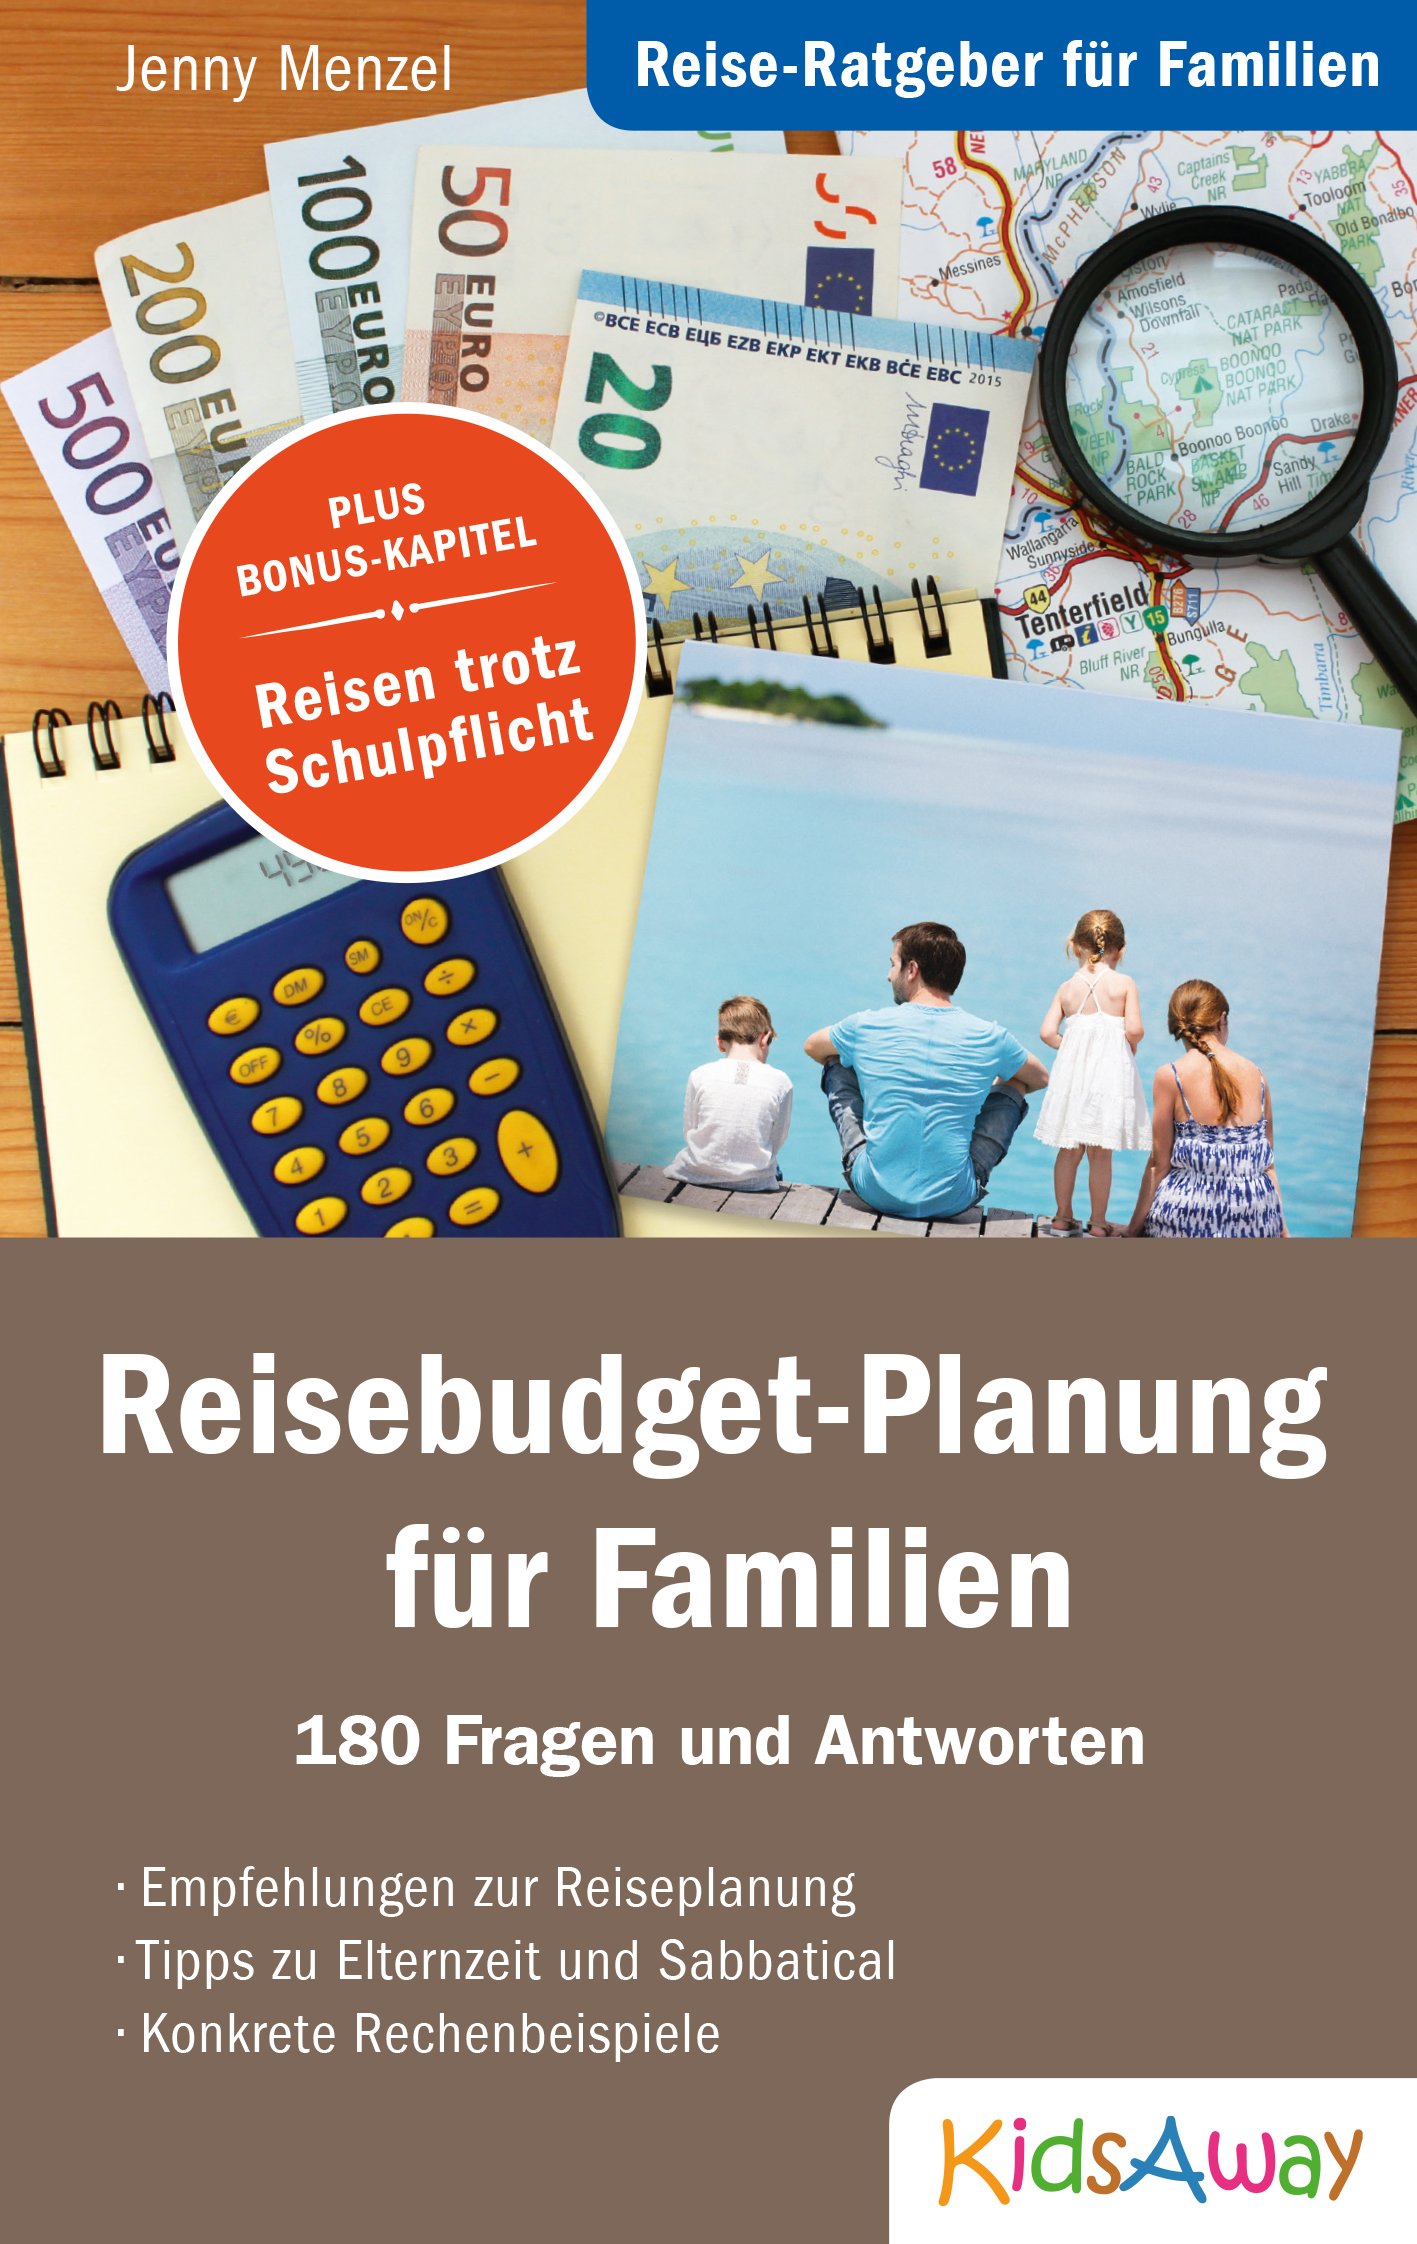 Reisebudget-Planung für Familien - Cover Vorderseite © KidsAway.de